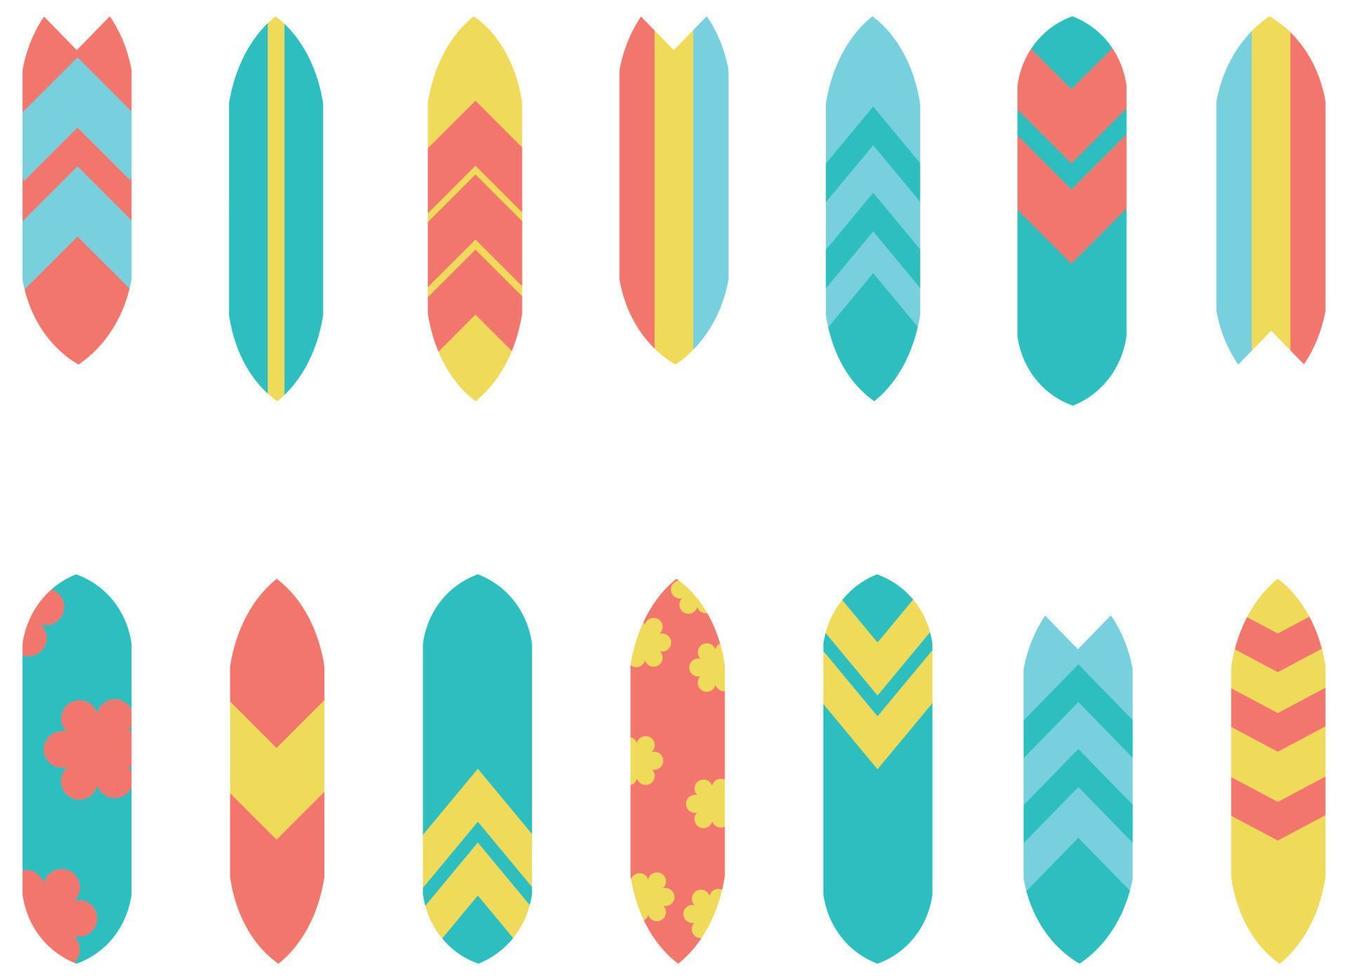 ilustração de diferentes padrões e cores de prancha de surf isolada. ilustração de prancha de surf vetor